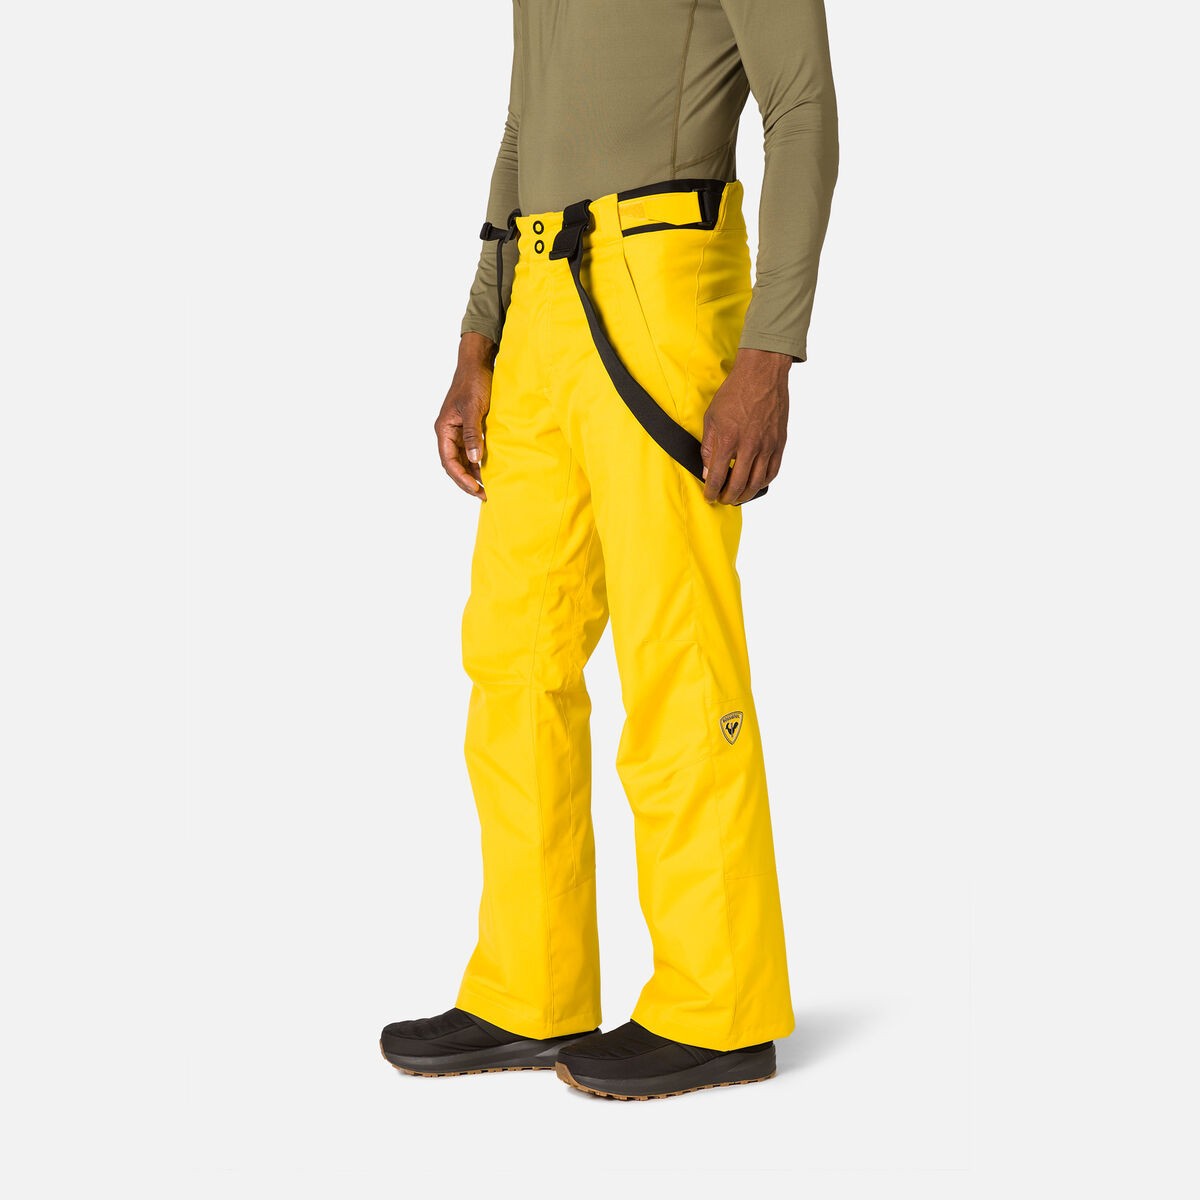 Rossignol Men's Ski Pants Yellow